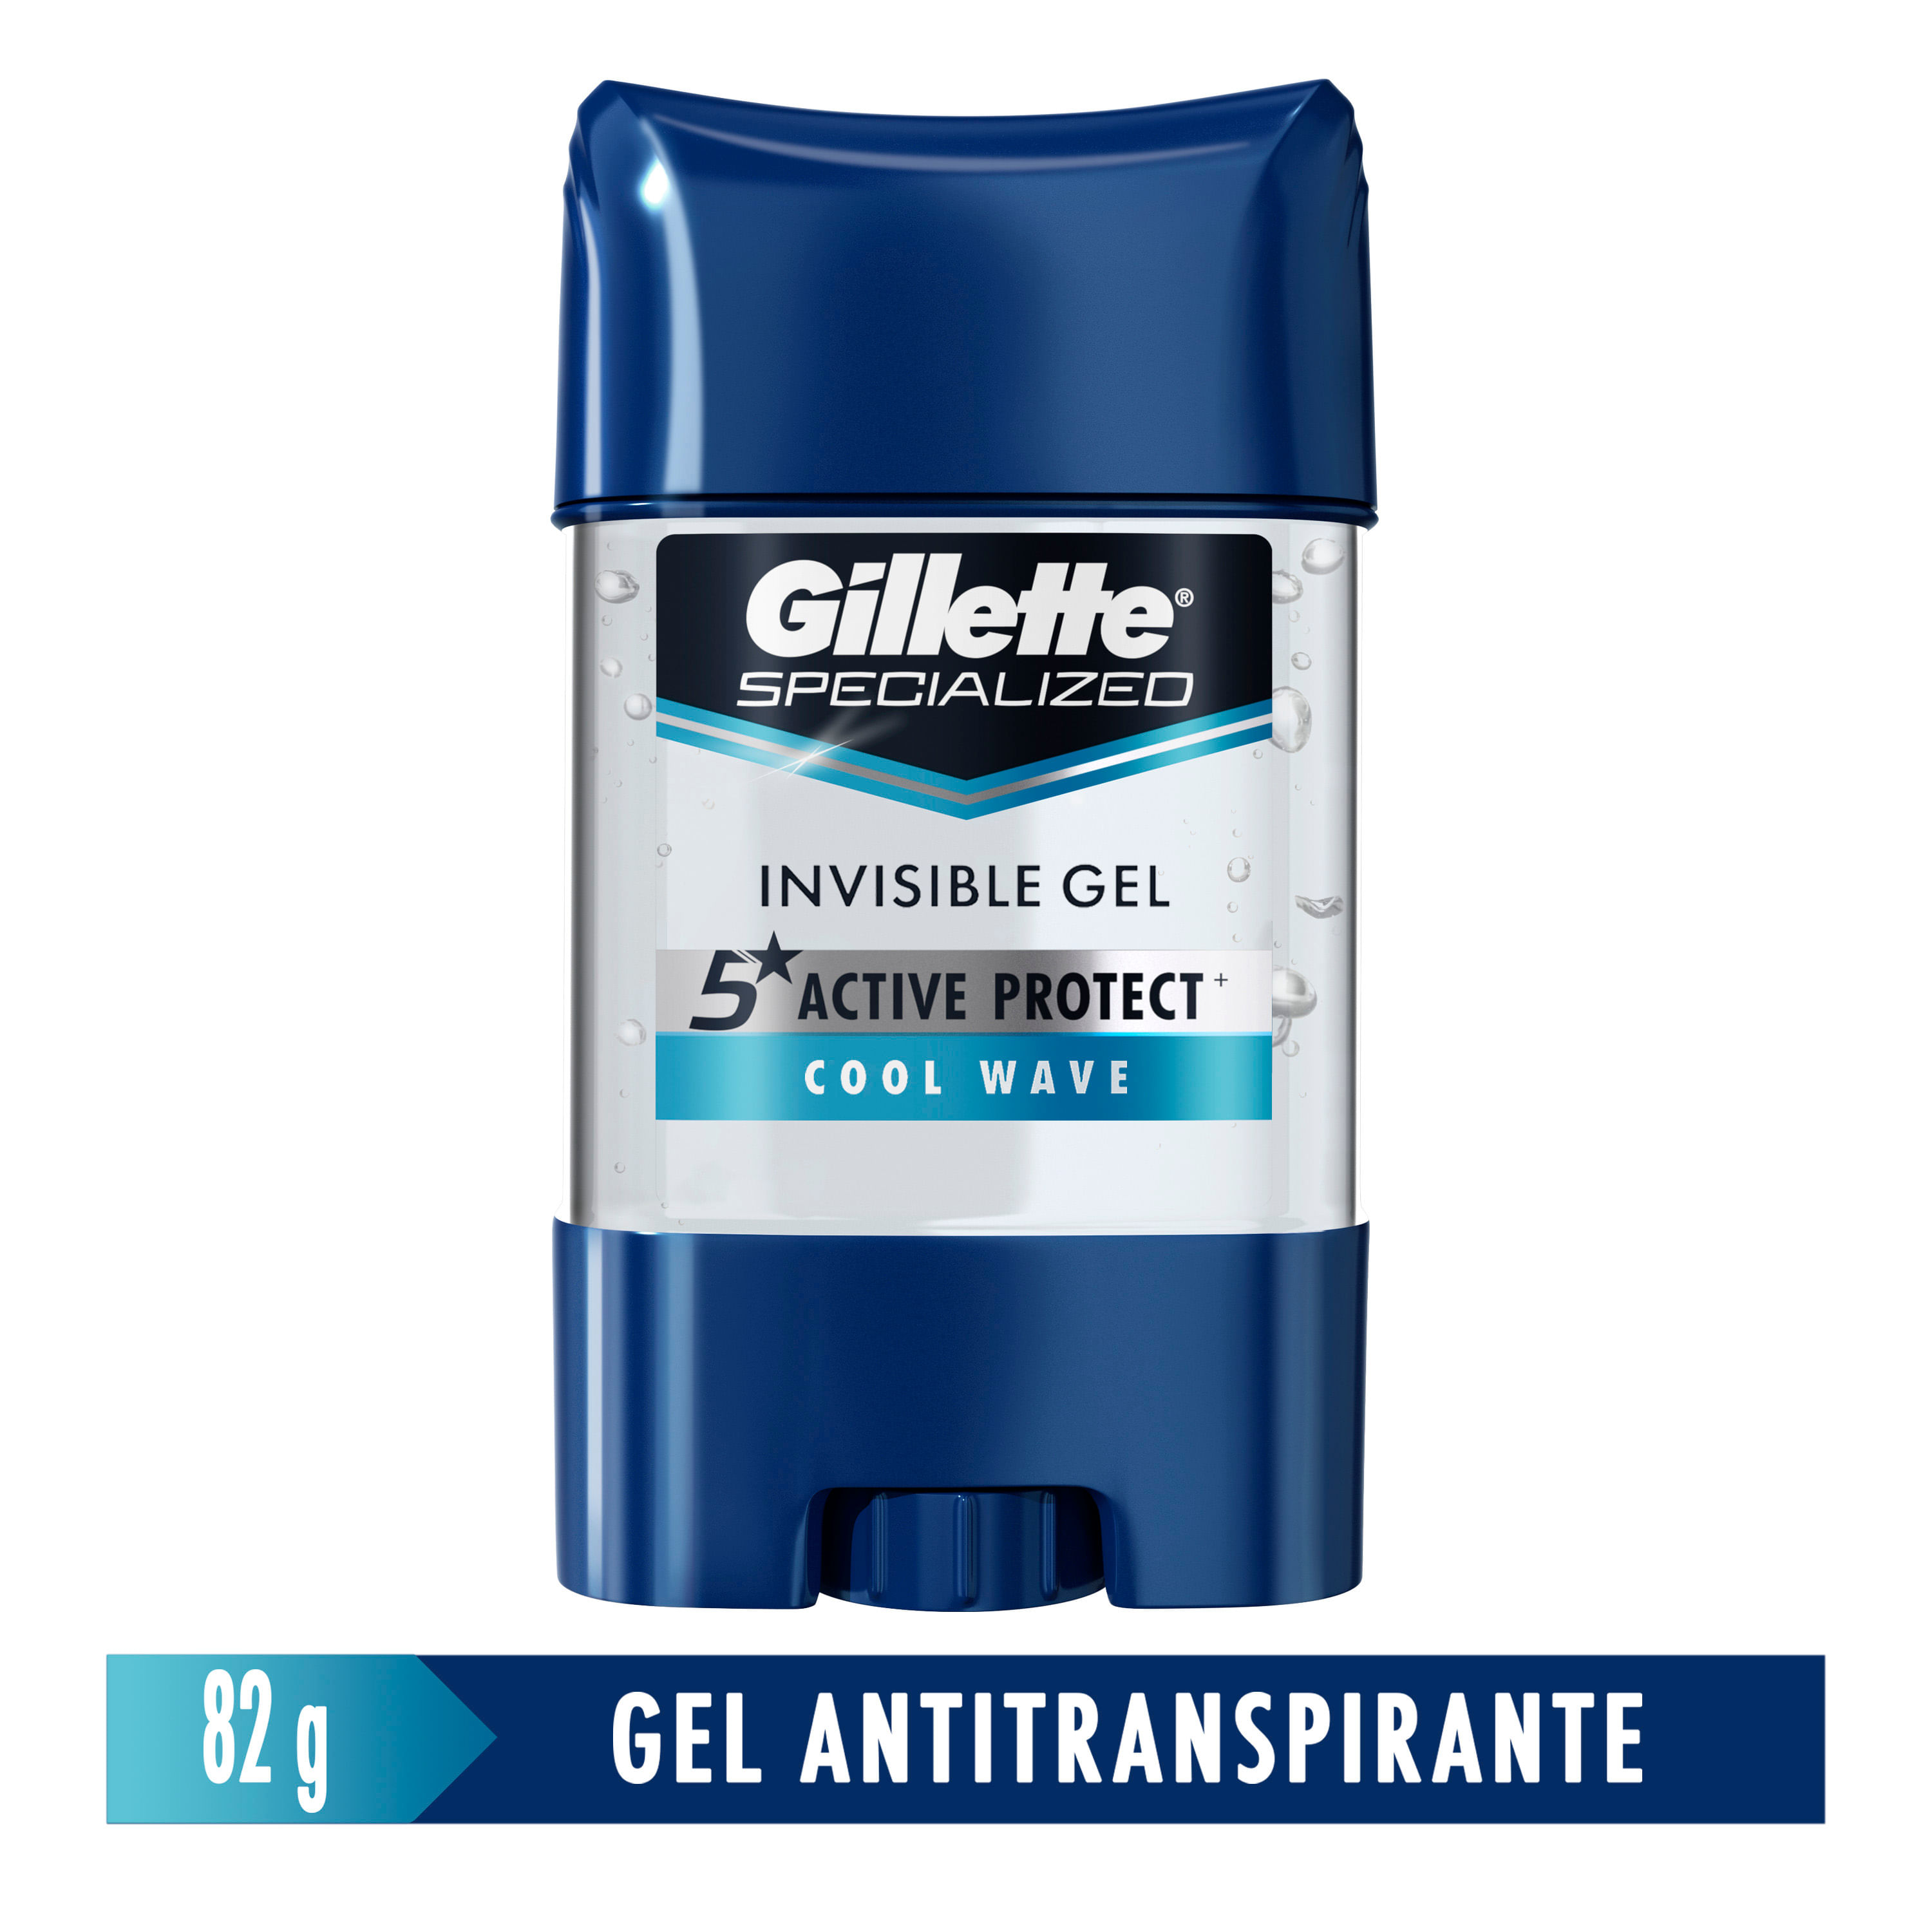 Antitranspirante-Gillette-Specialized-Cool-Wave-Gel-82-g-1-13280